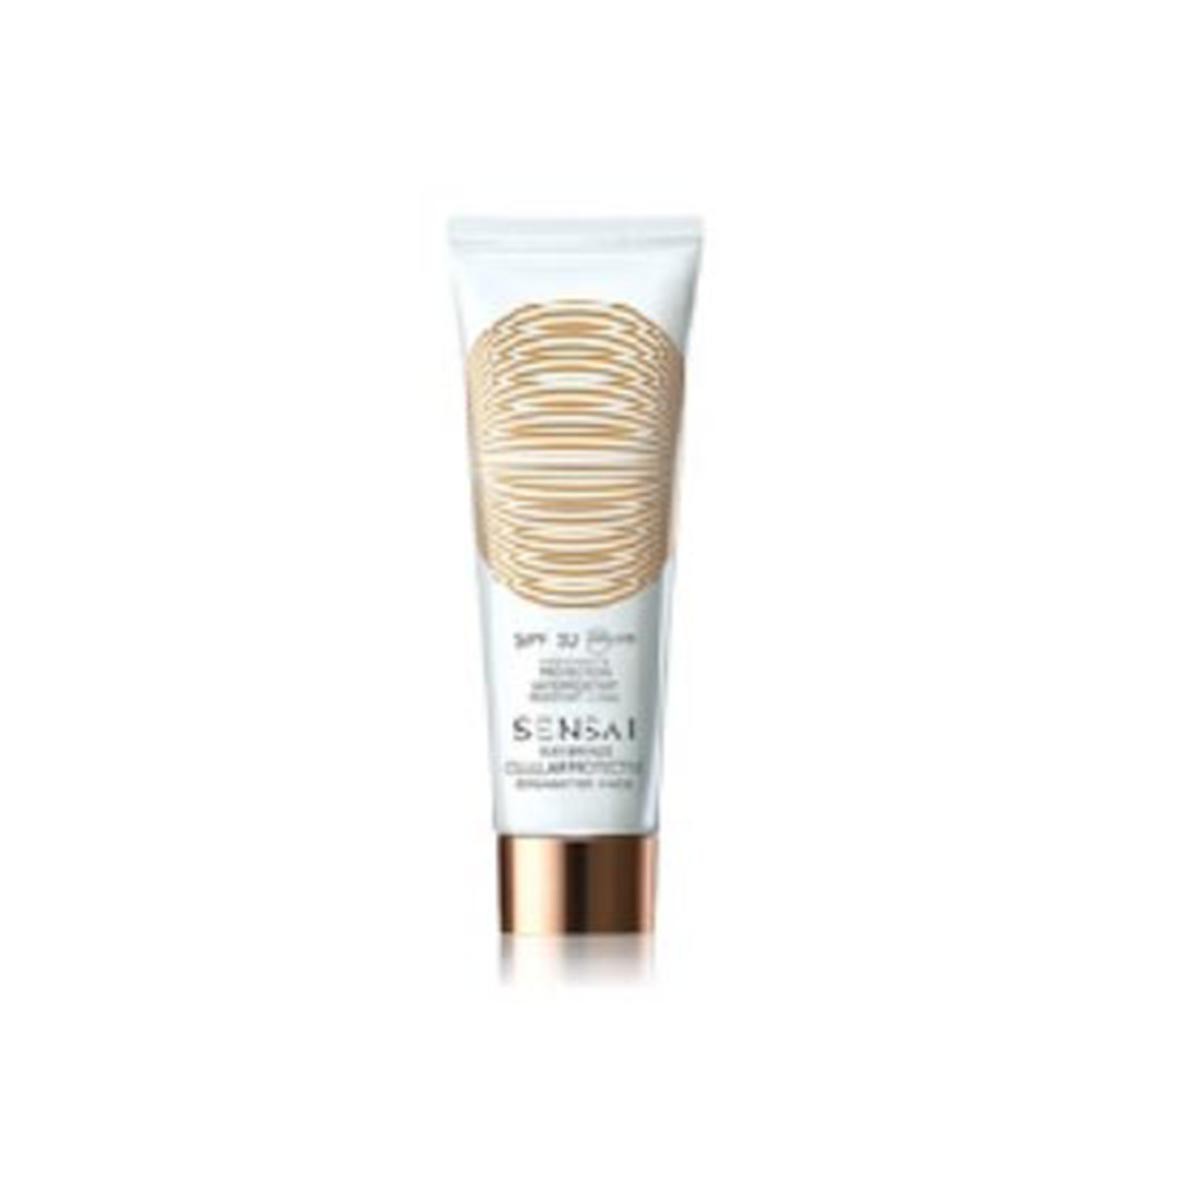 kanebo-sensai-cellular-protective-for-face-spf50-50ml-cream